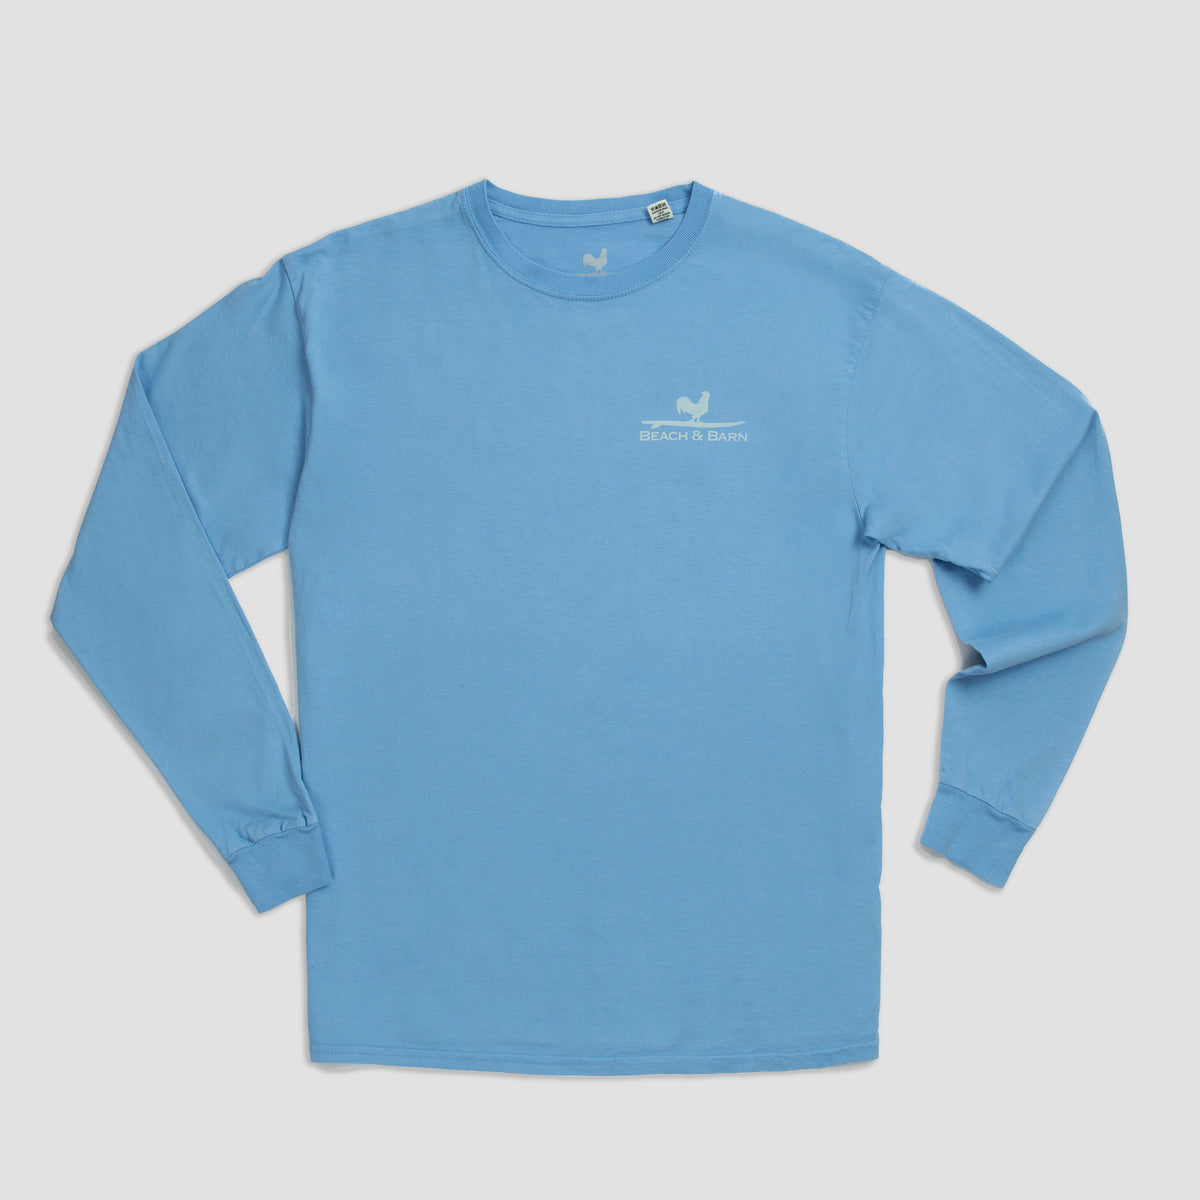 Sale - Shoulder Season Long Sleeve Tee Shirt